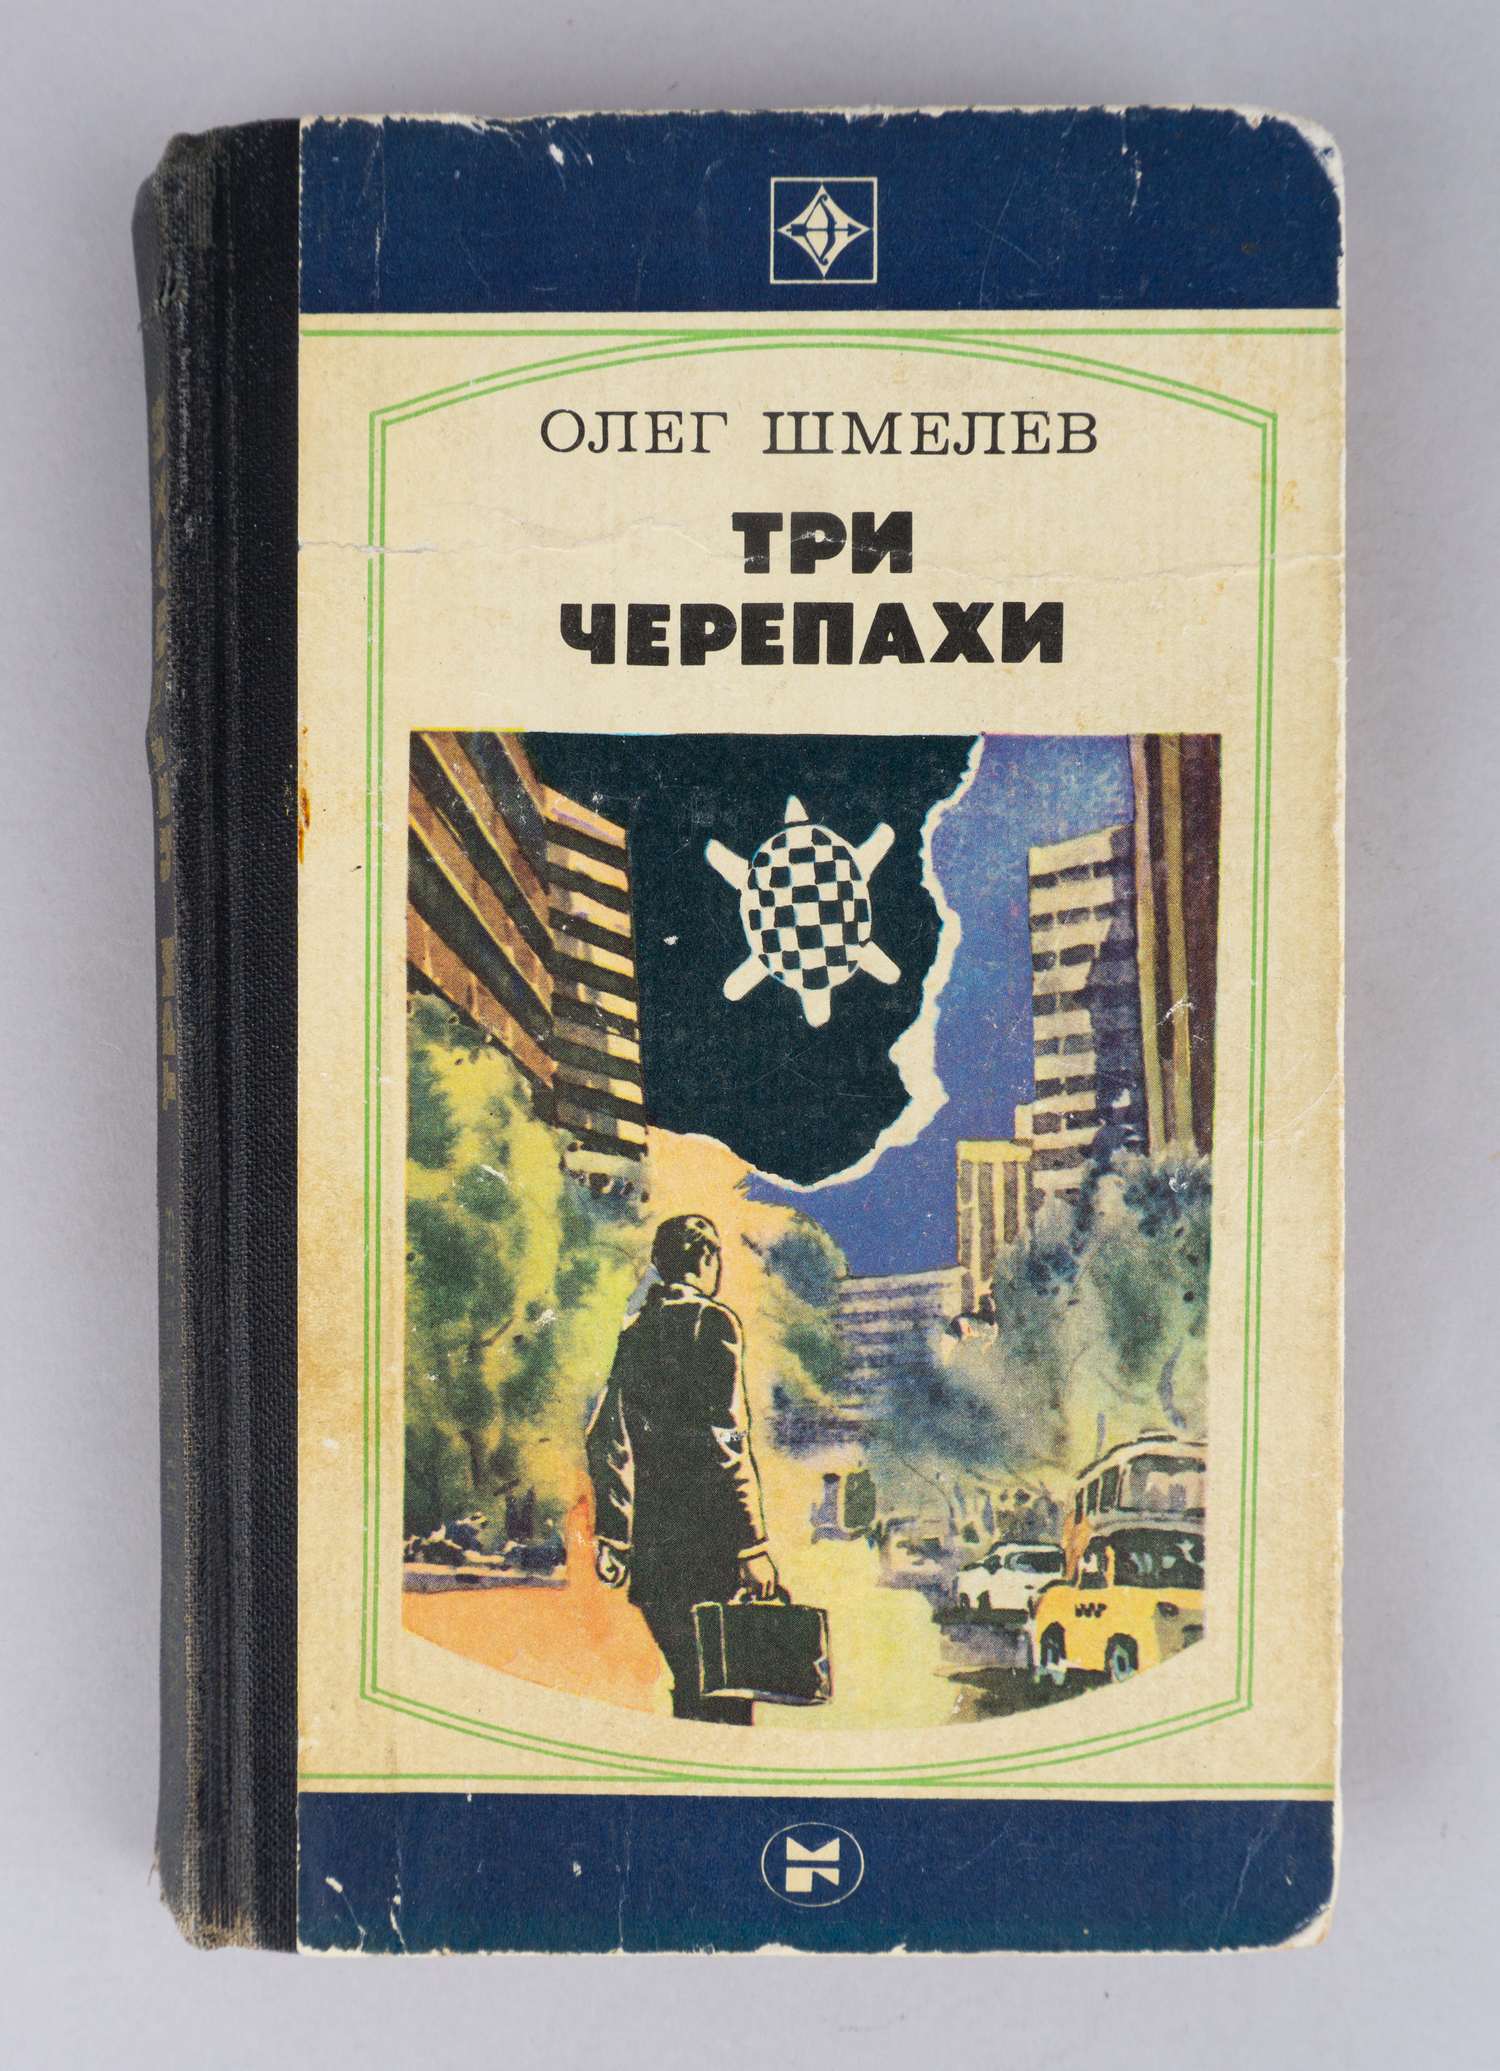 Шмелёв О.М. Три черепахи (М., 1984). Дарственная надпись автора на титульном листе.